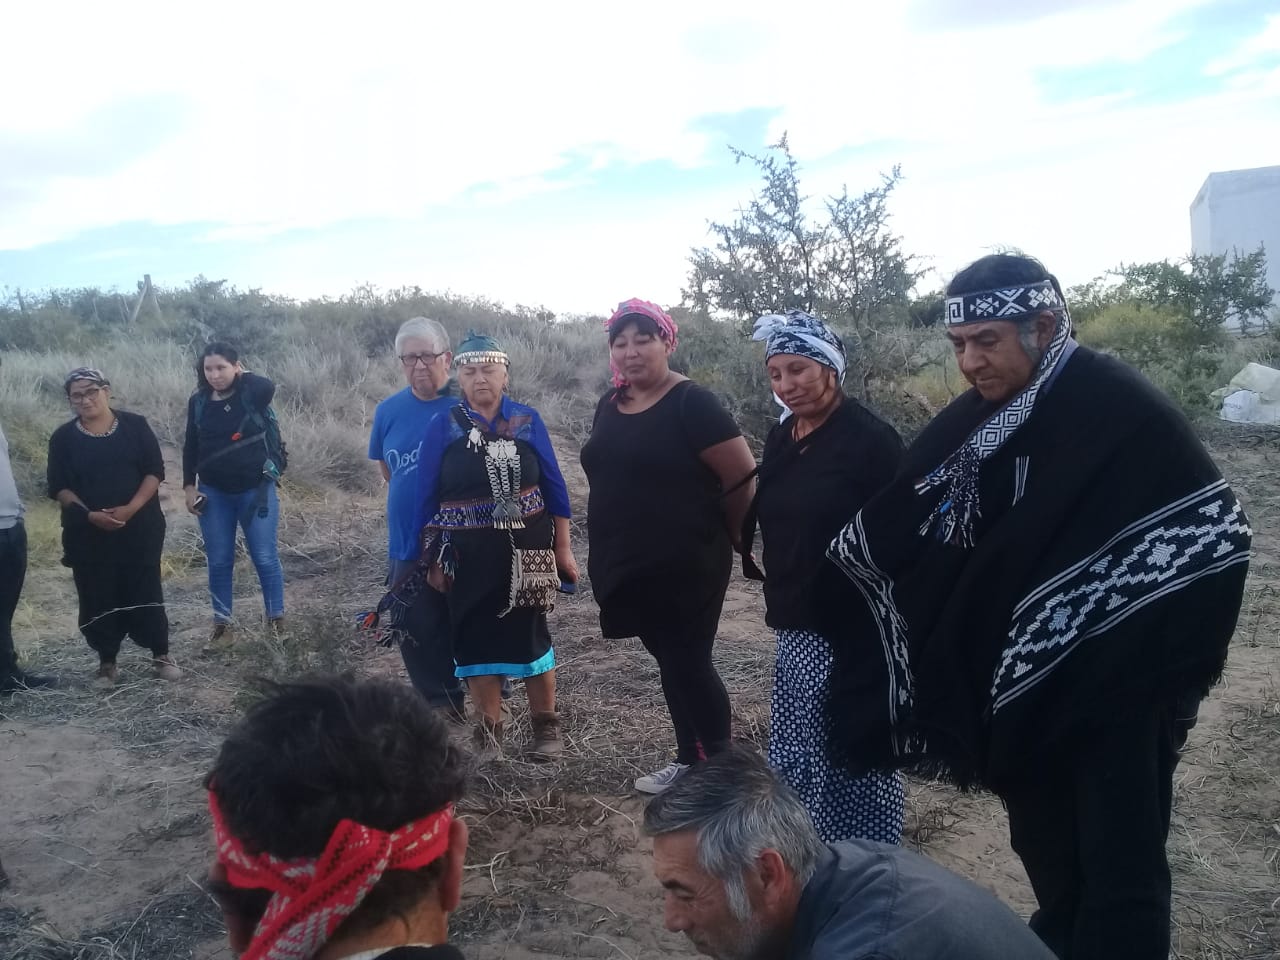 La ceremonia de restitución finalizó el domingo, tras una vigilia organizada por la comunidad mapuche Traun kutral